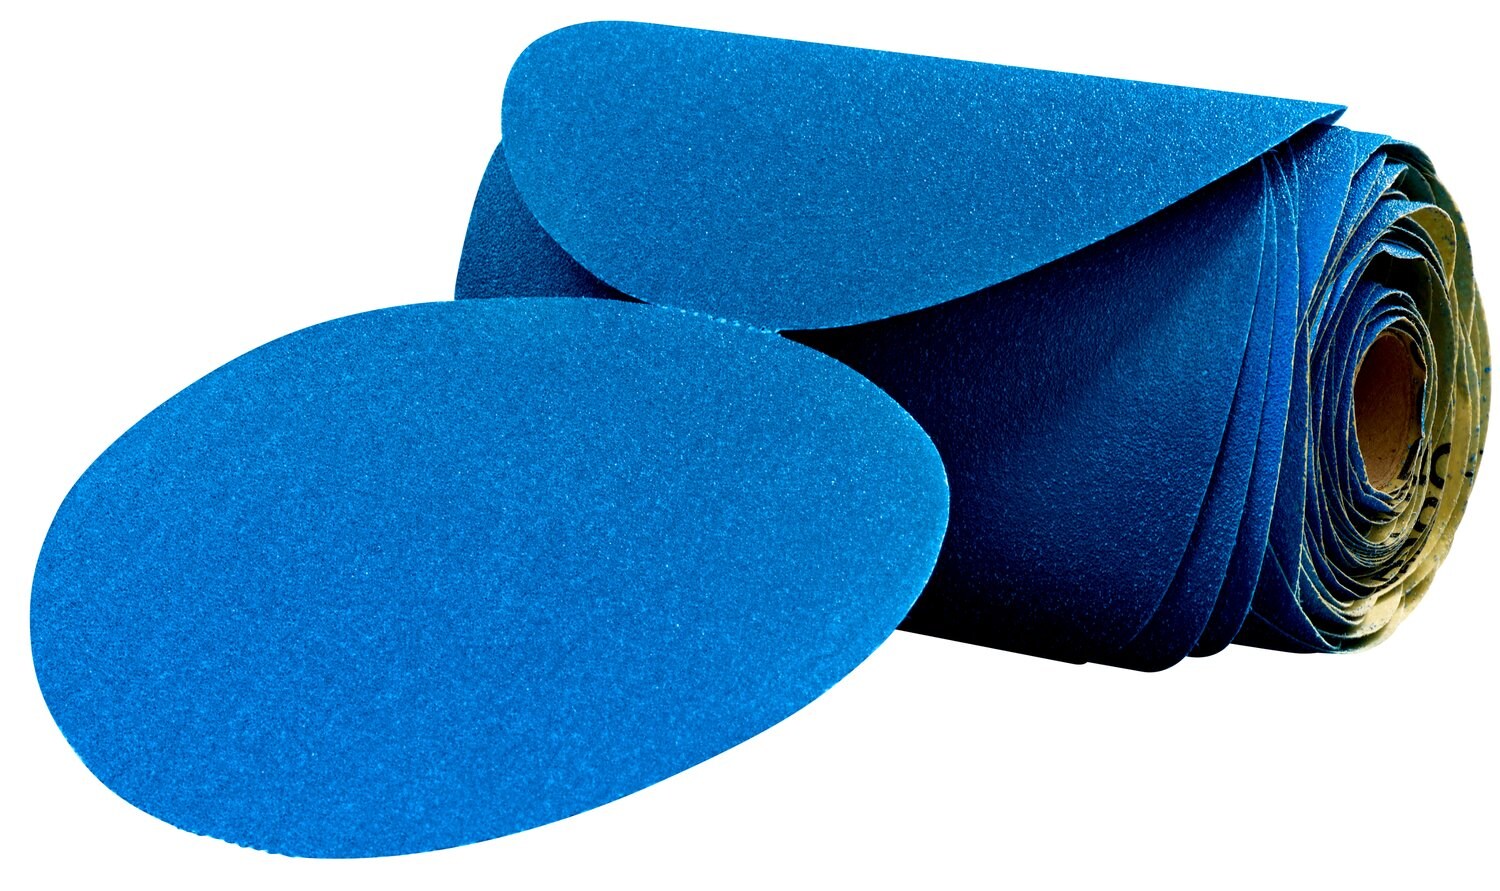 7100098196 - 3M Stikit Blue Abrasive Disc Roll, 36213, 6 in, 600 grade, 100 discs
per roll, 5 rolls per case